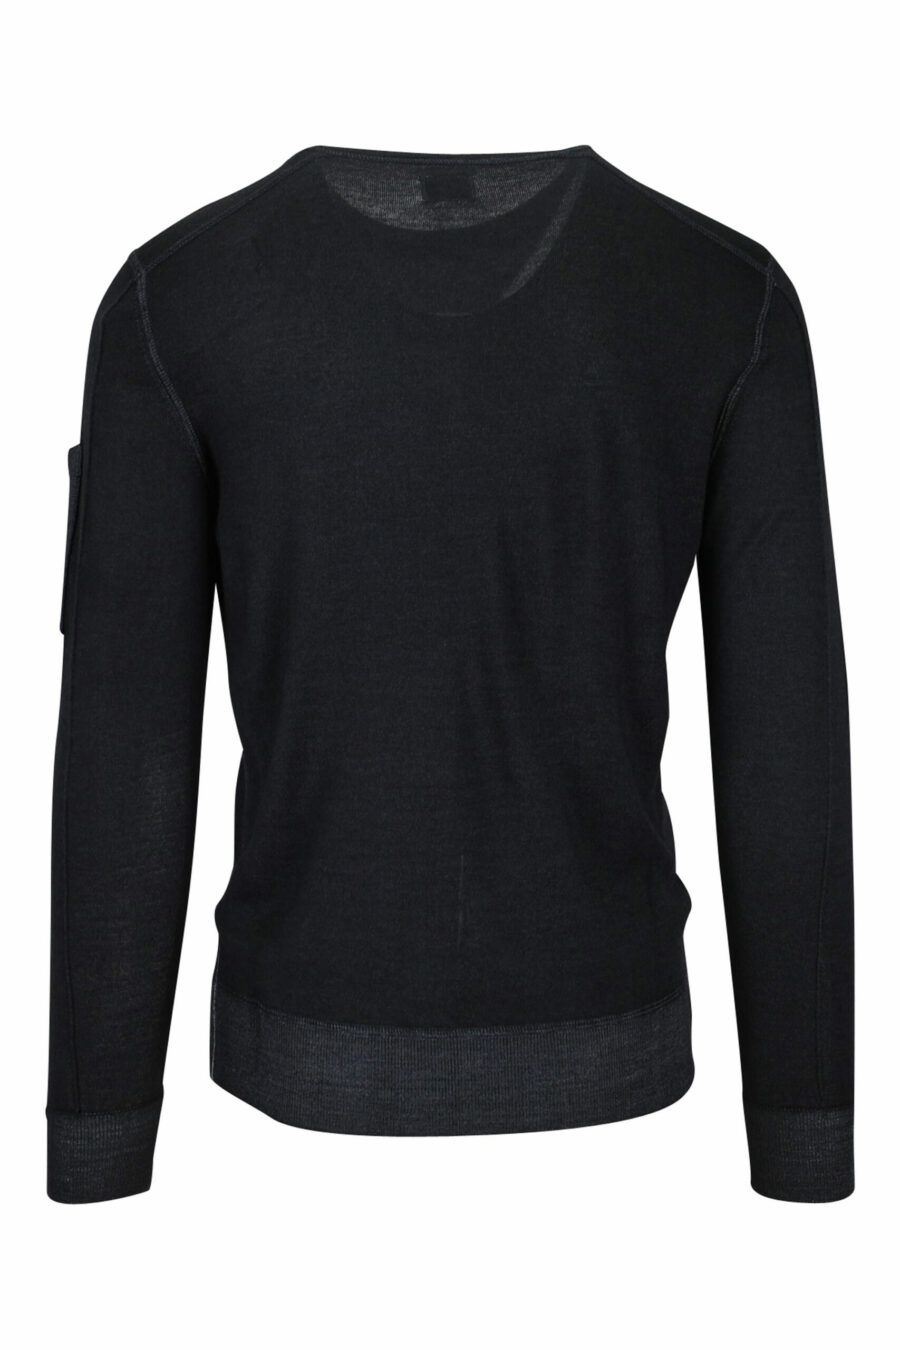 Sweatshirt noir avec logo latéral de la lentille - 7620943583458 2 scaled